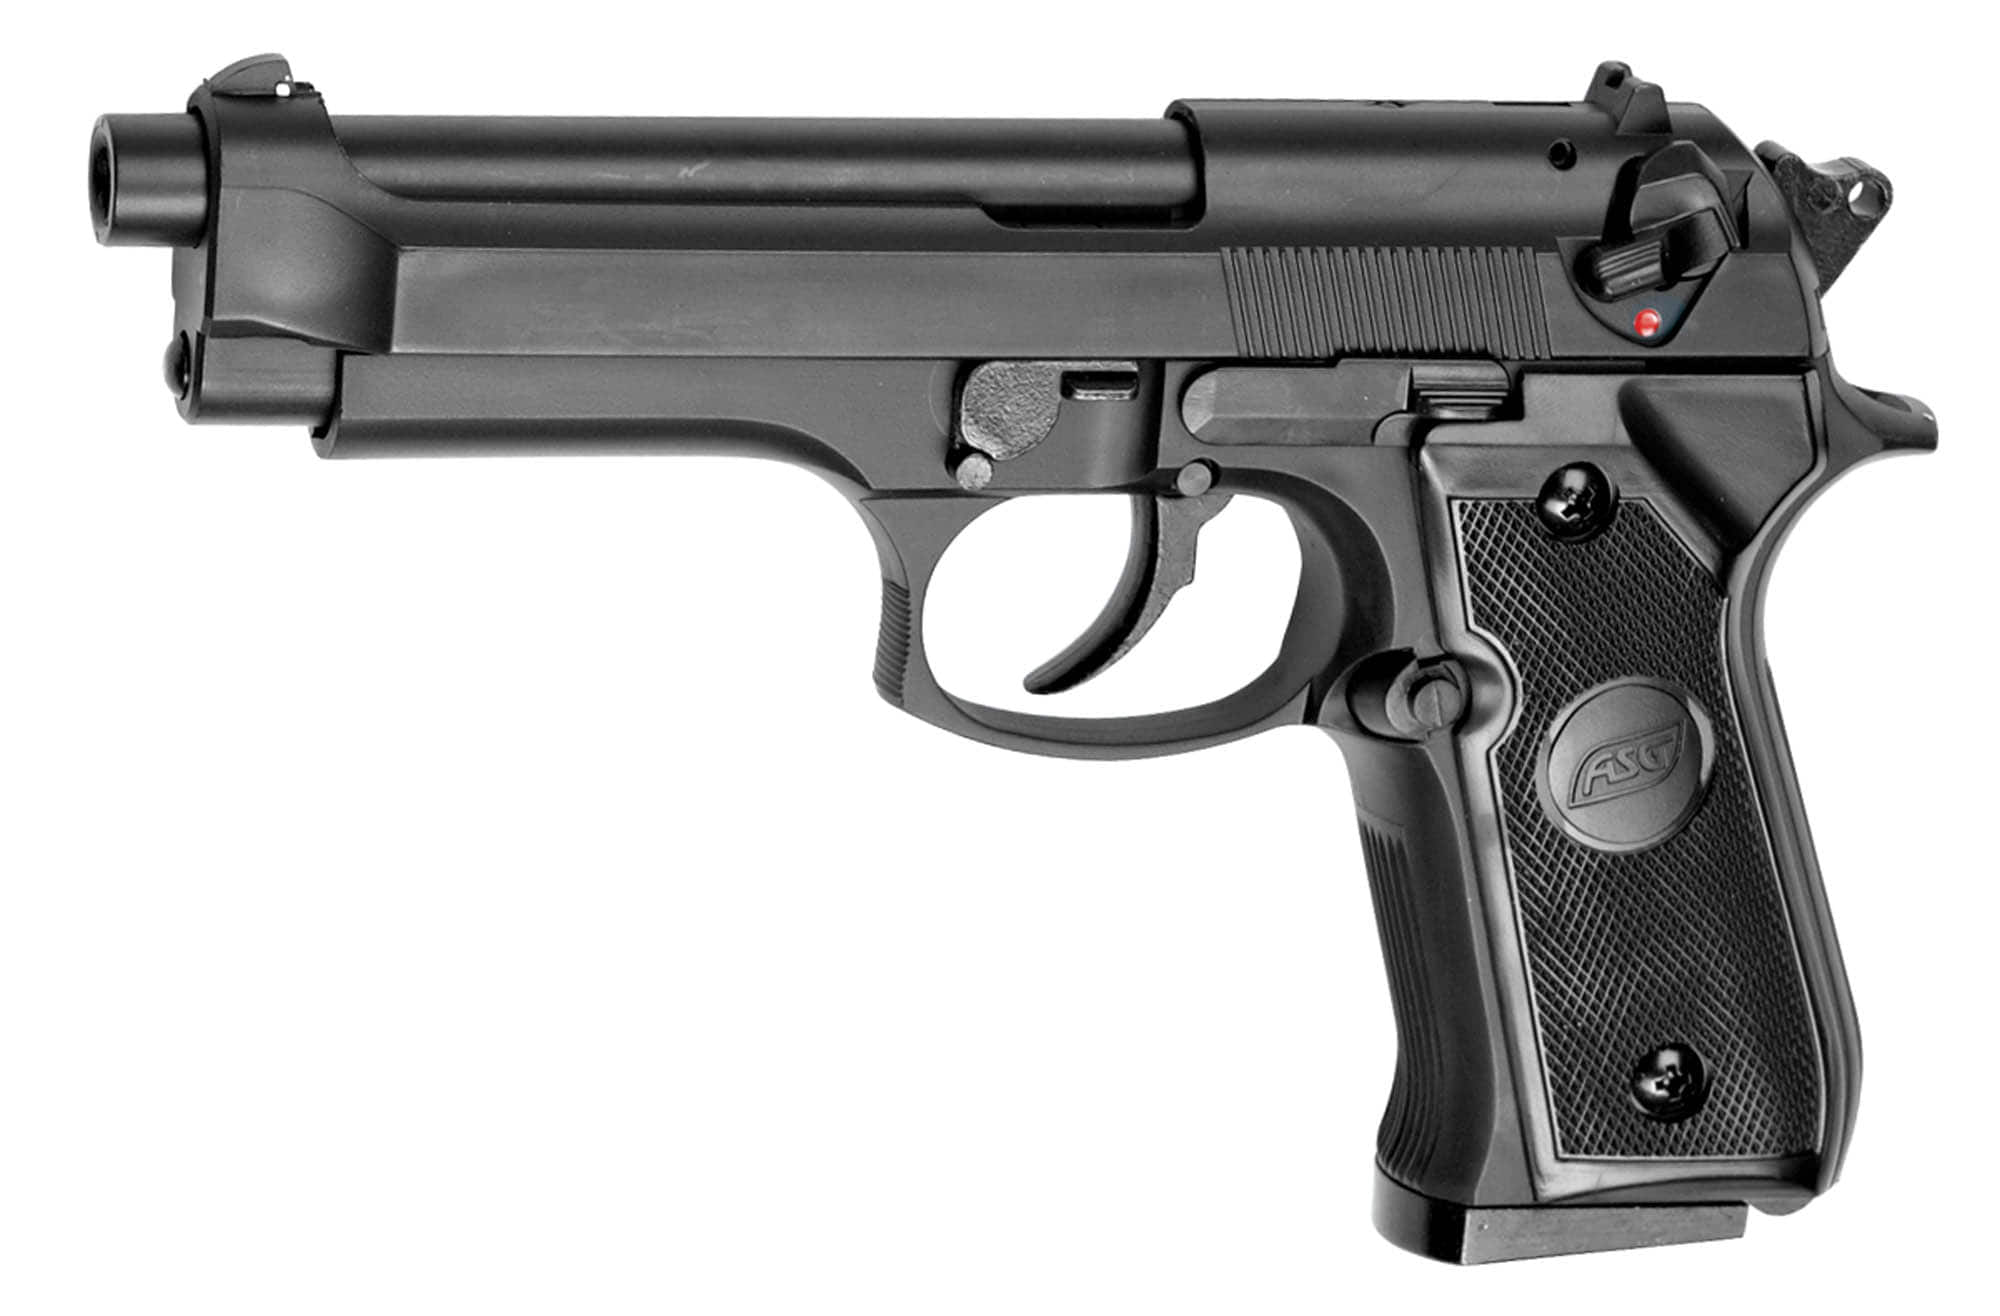 Réplique du pistolet à gaz M9 - boutique Gunfire